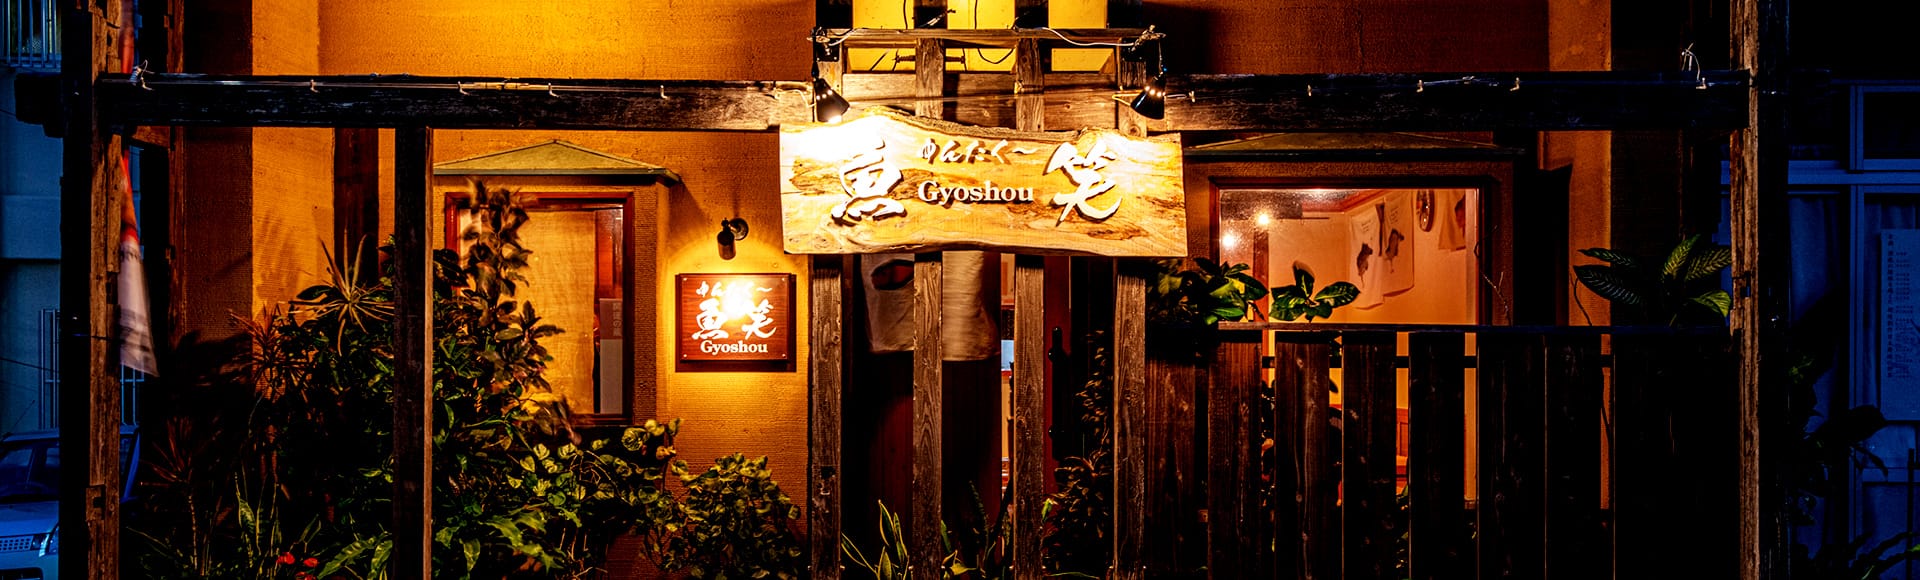 沖縄の「ゆんたー」が集まる居酒屋